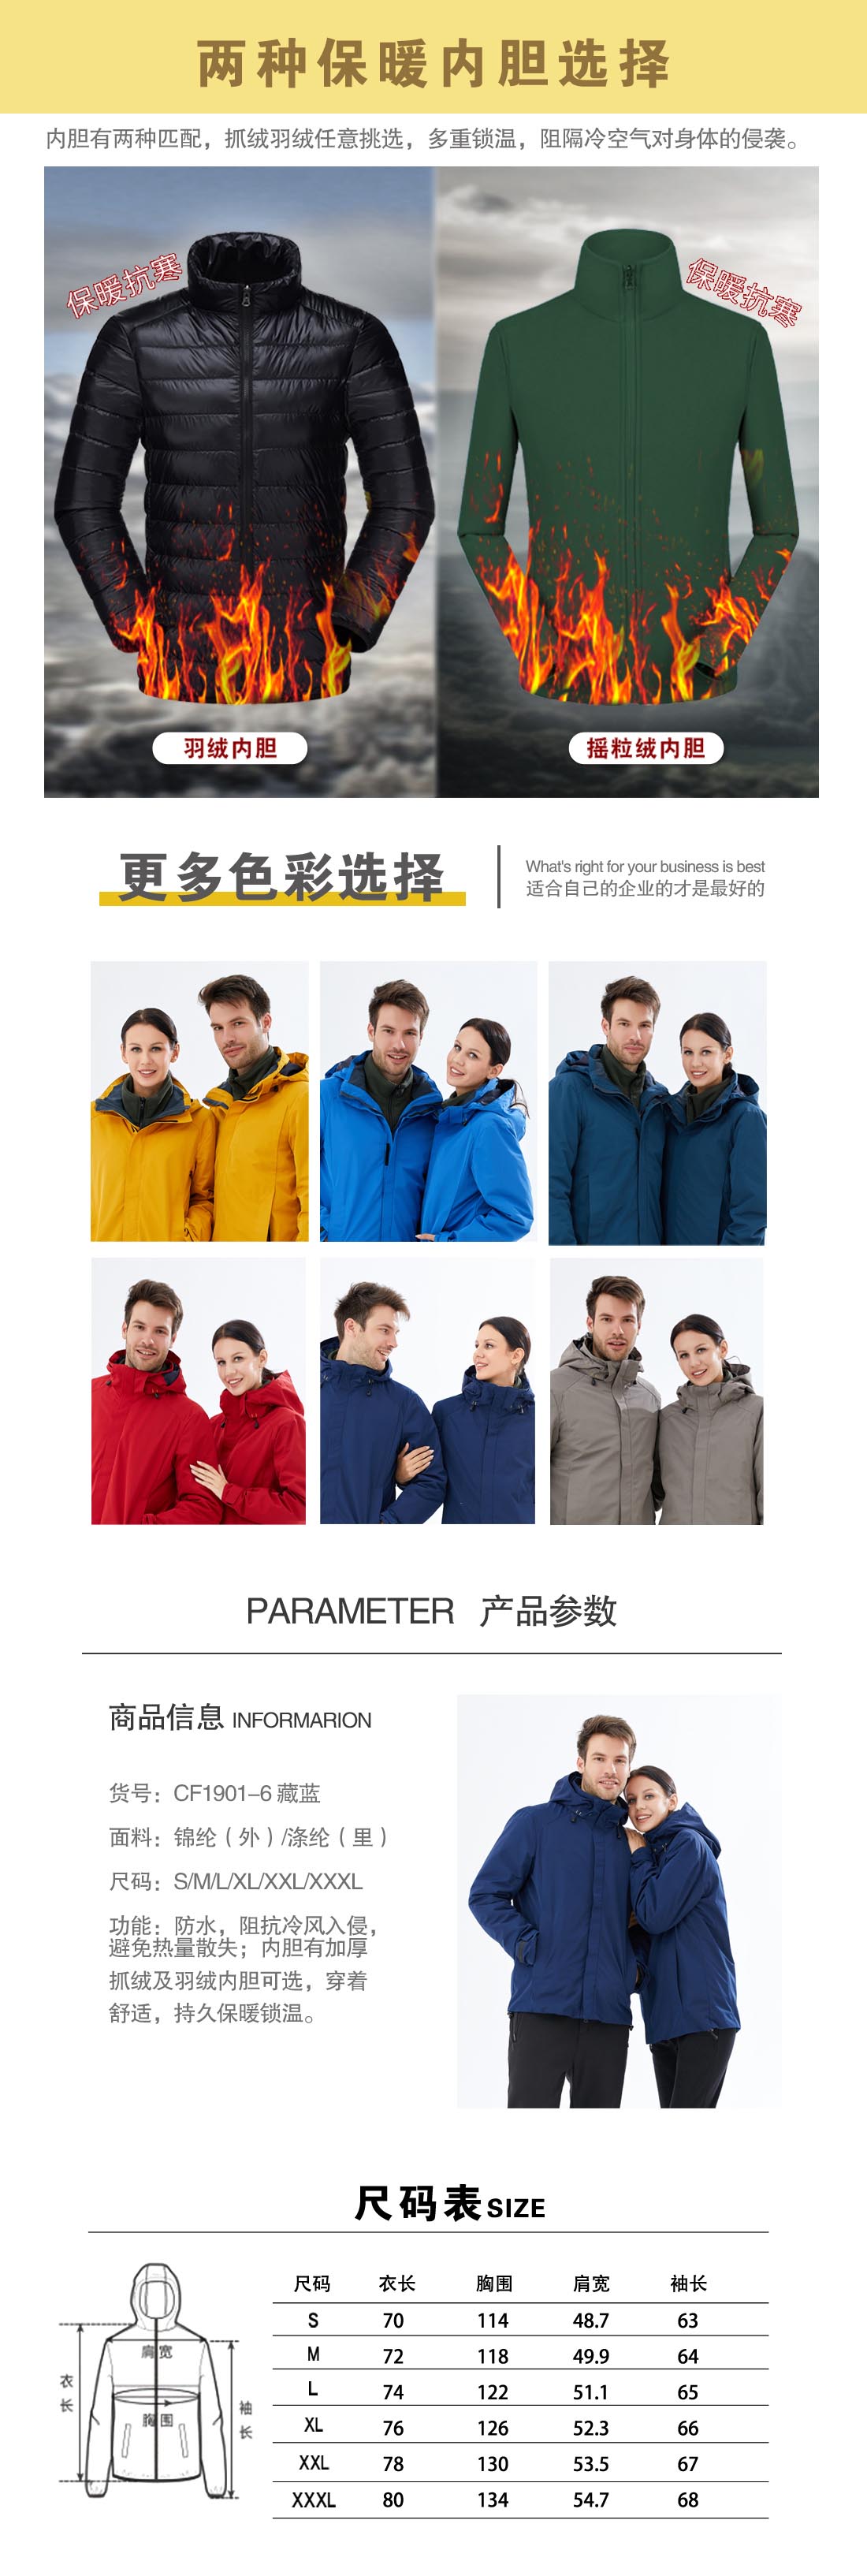 藏蓝色冲锋衣CF1901-6(图3)